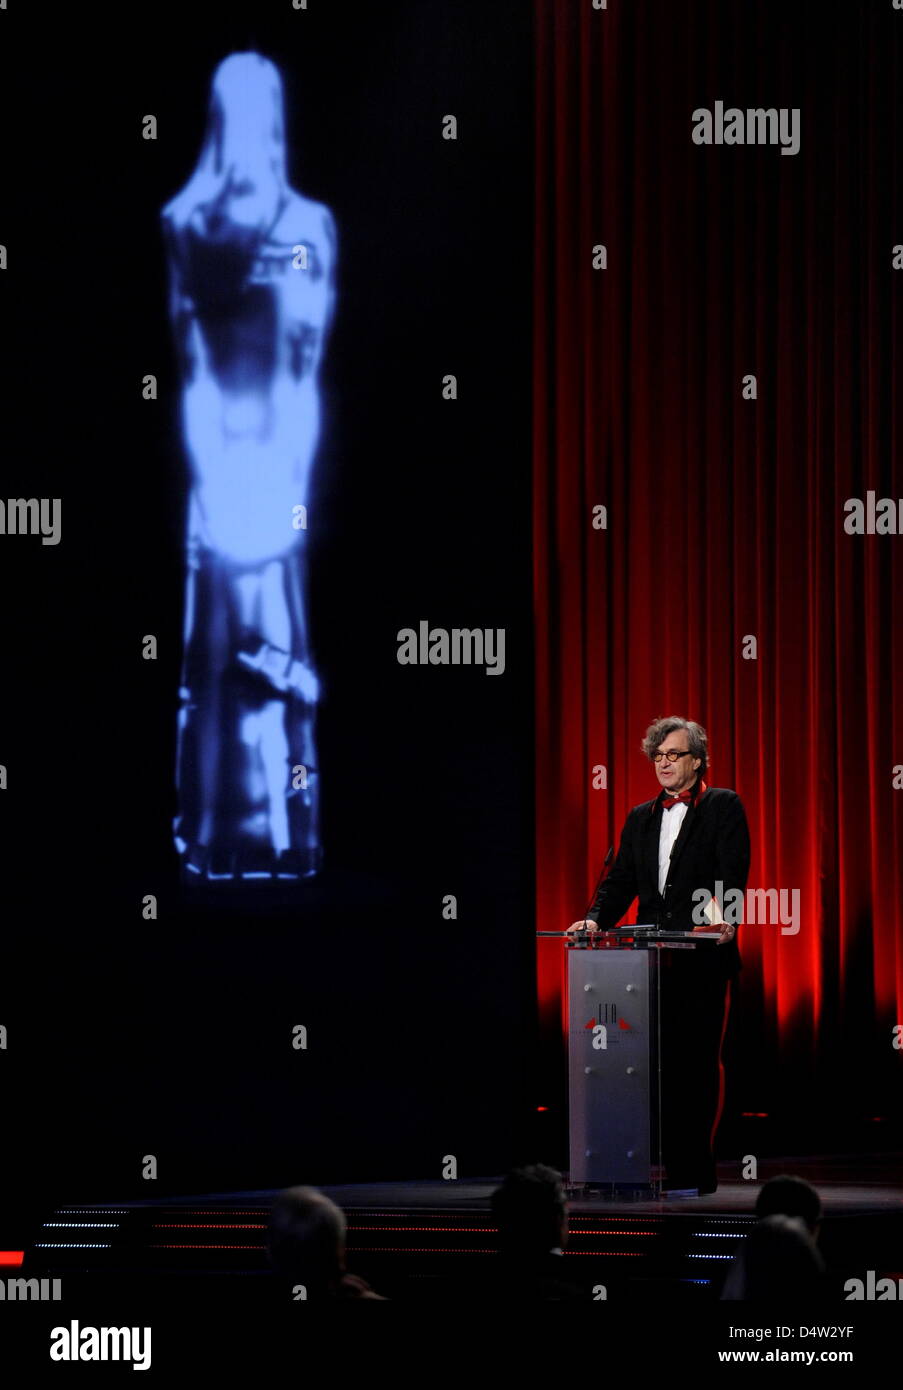 Der Präsident der European Film Academy (EFA), réalisateur Wim Wenders, spricht am Samstag (du 12.12.2009) in der Jahrhunderthalle de Bochum bei der Verleihung des Europäischen Filmpreises. Der Europäische Filmpreis wird jährlich dans 16 l'und Kategorien vergeben auch als europäischer Oscar. Foto : Clemens Bilan dpa/lnw Banque D'Images